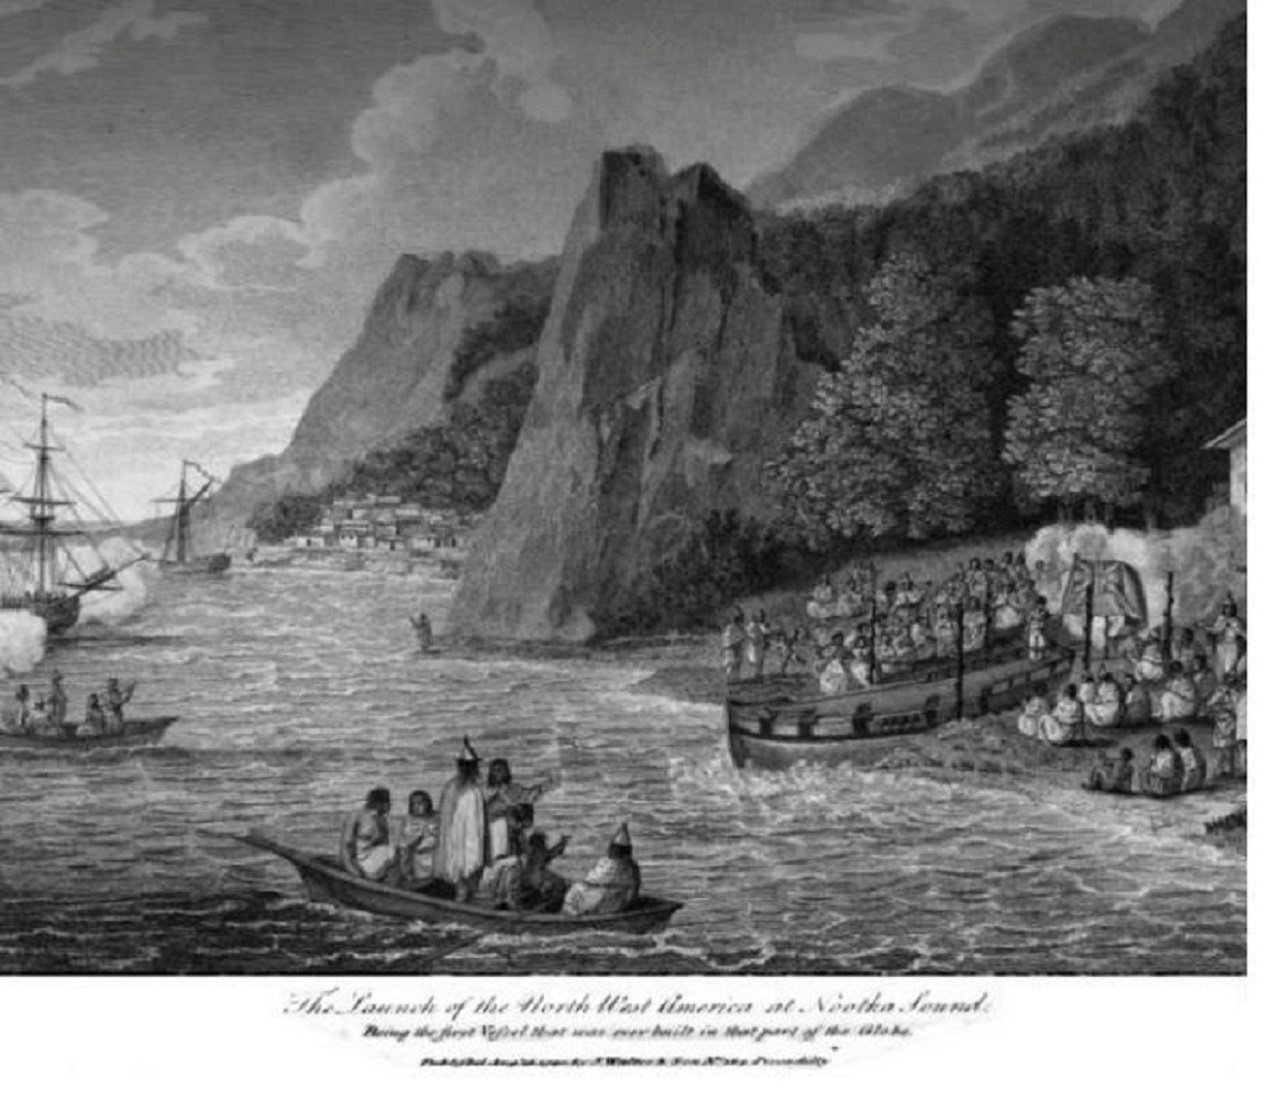 Perés i Crespí, los primeros europeos que visitaron la costa noroeste de Canadá